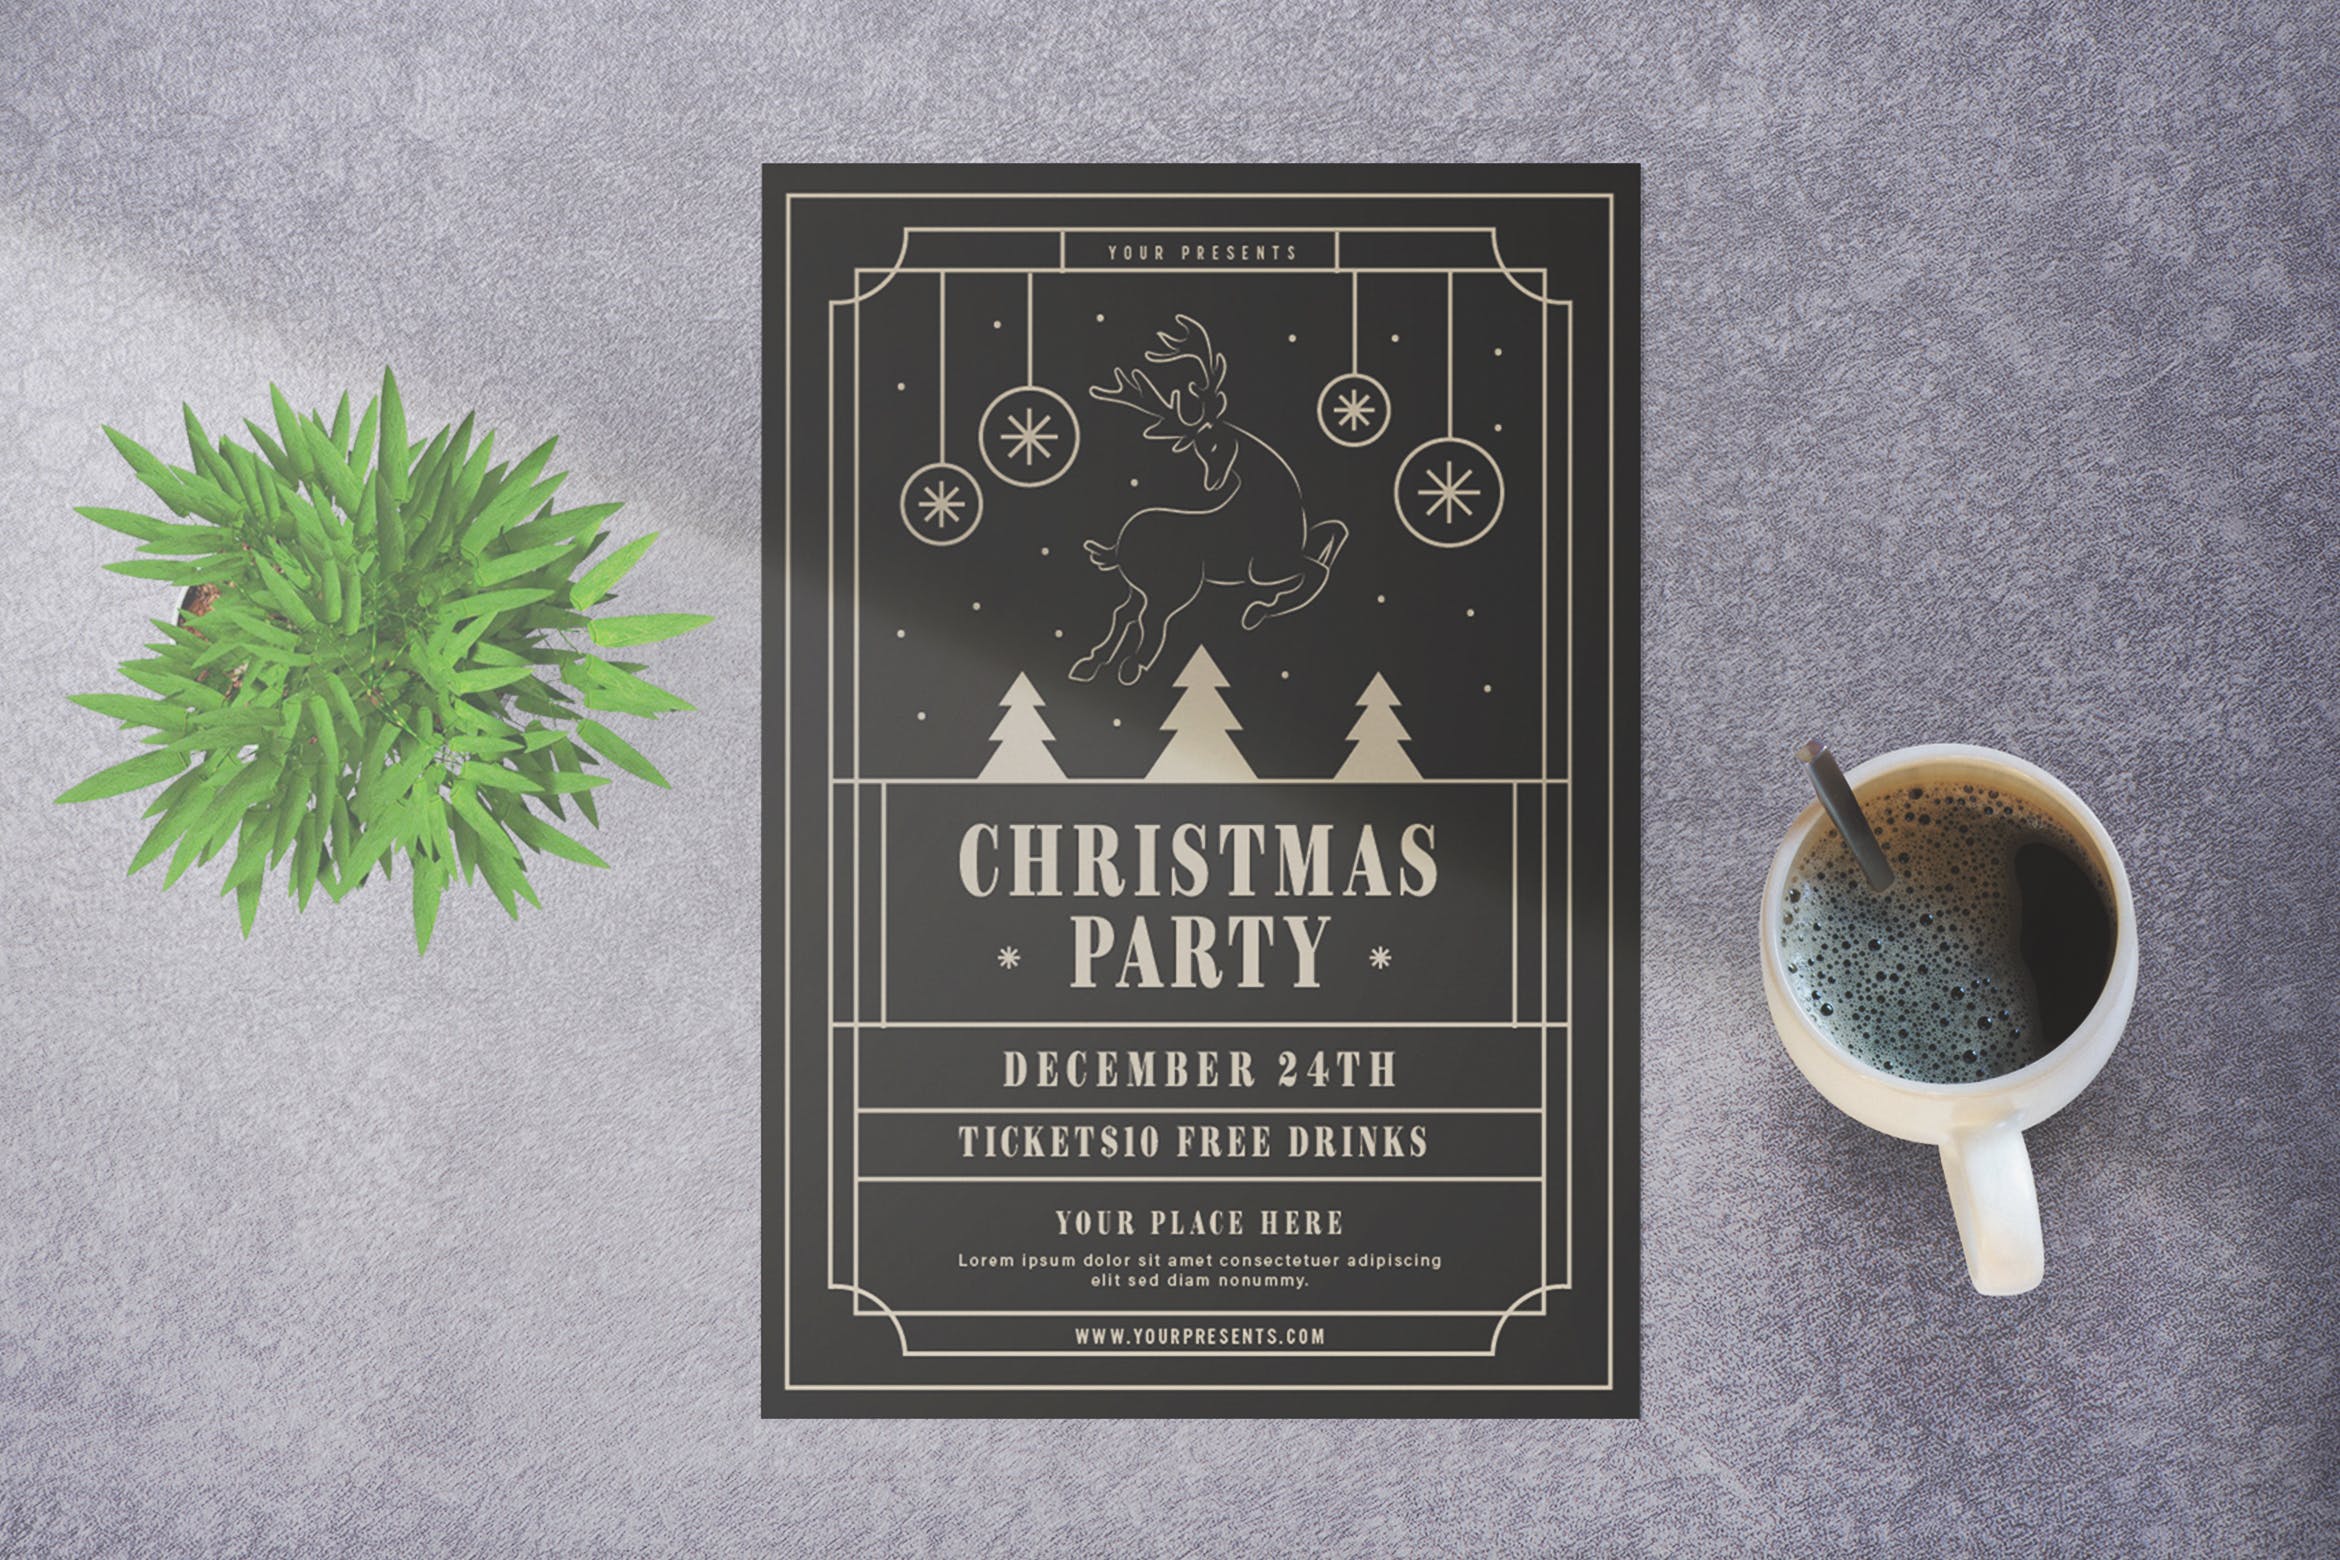 简约线条框设计风格圣诞节派对海报传单模板 Christmas Party插图